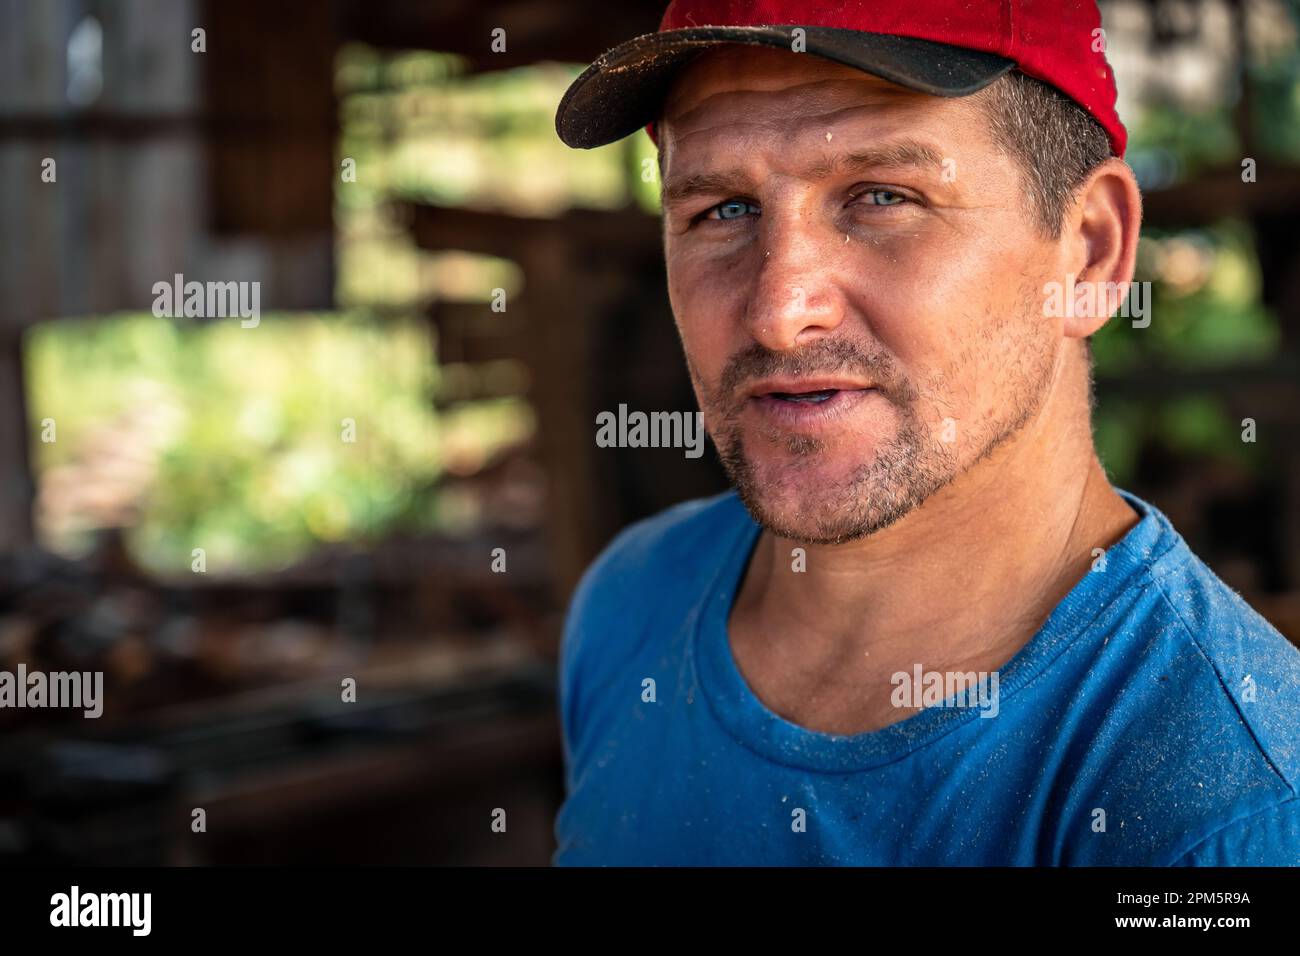 Primo piano ritratto di un bel lavoratore maschile che indossa un cappello rosso guardando la macchina fotografica. Lavoro, industria pesante, occupazione Foto Stock